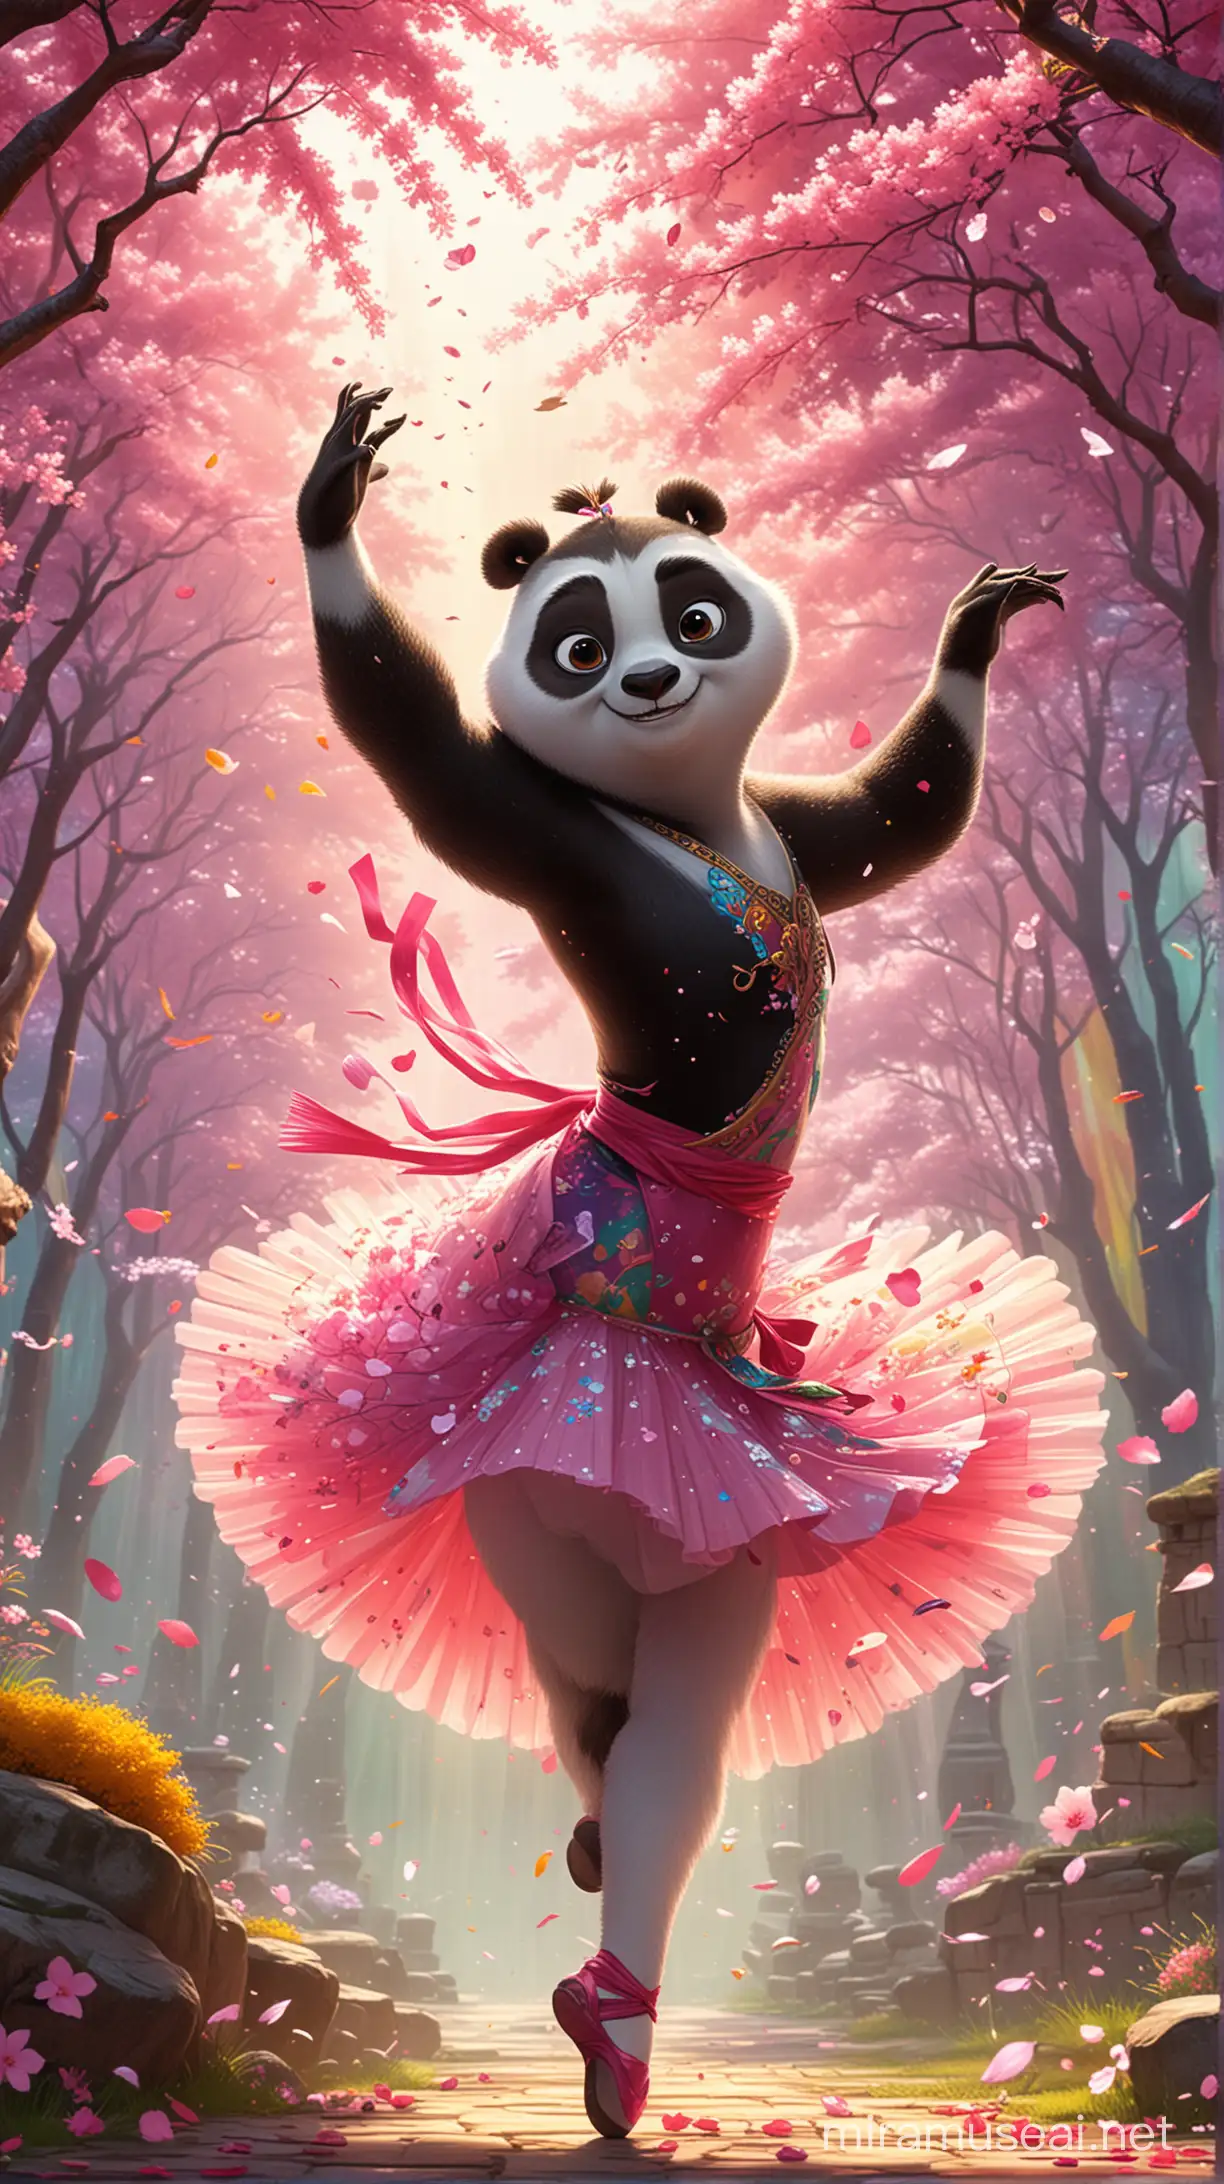 Kung fu panda bailarina,dibujo animado,cartoon,colores vivos,arcoiris,fondo flores de cerezo